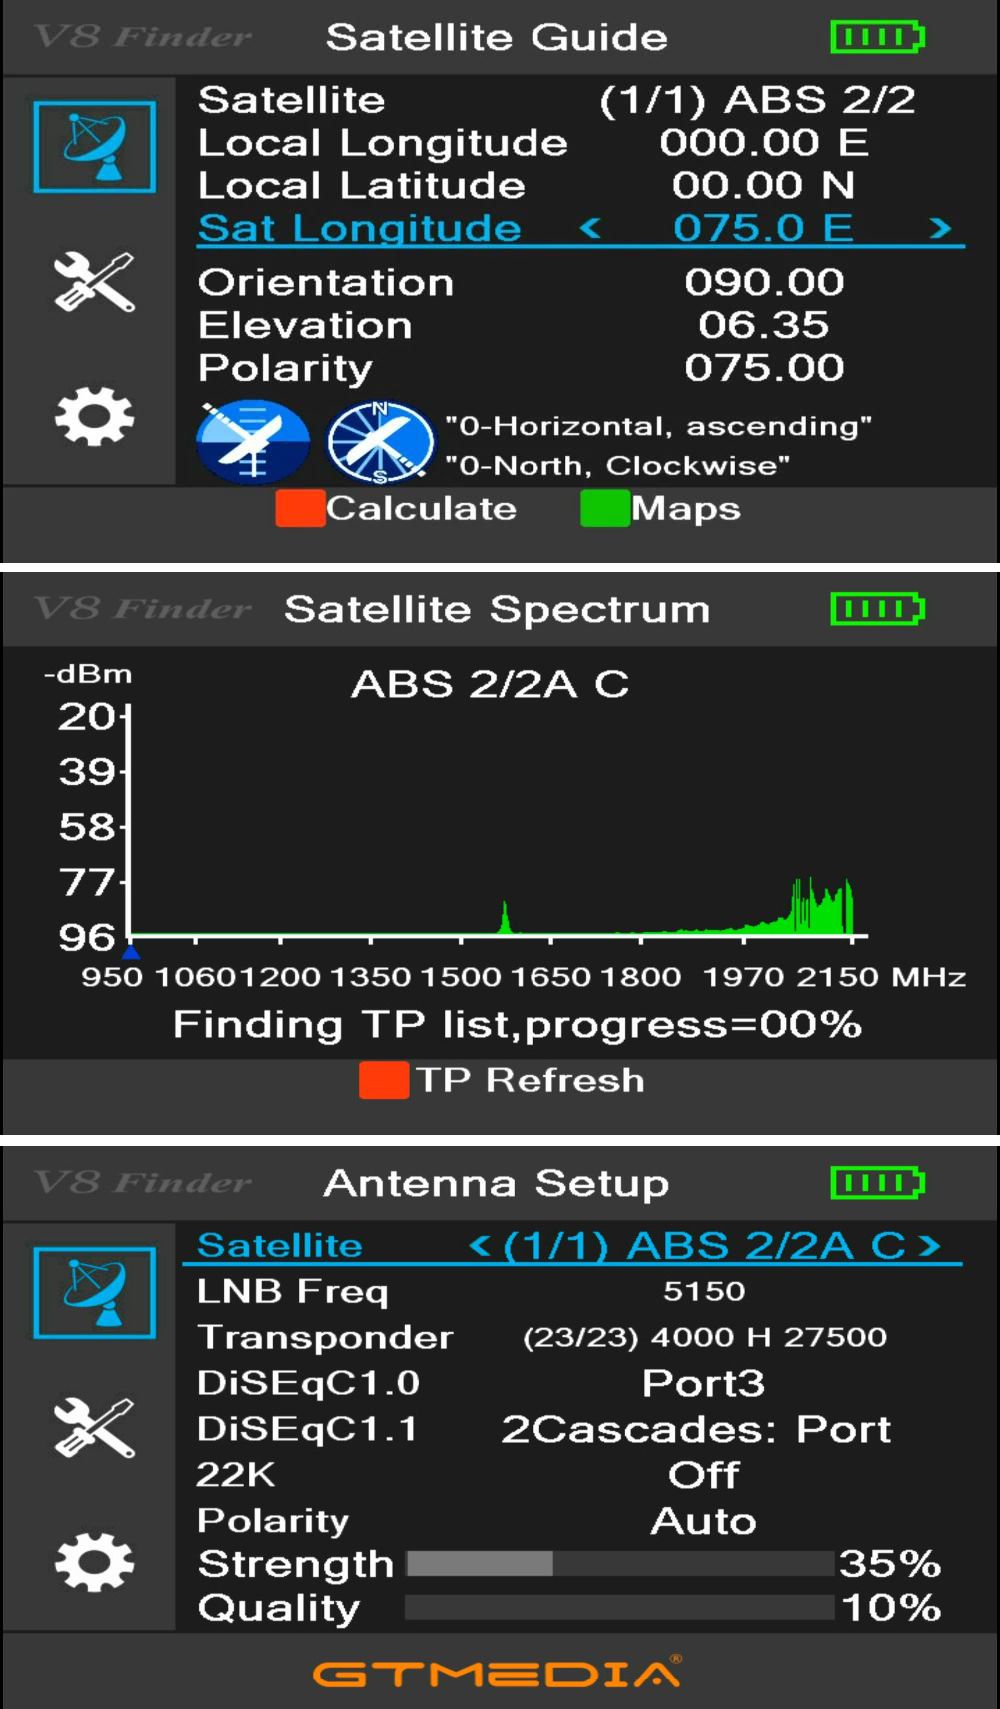 GTMEDIA-V8-Finder-Meter-HD-1080p-Digital-Satellite-DVB-S2S2X-Finder-Meter-Spectrum-Analyzer-Support--1679007